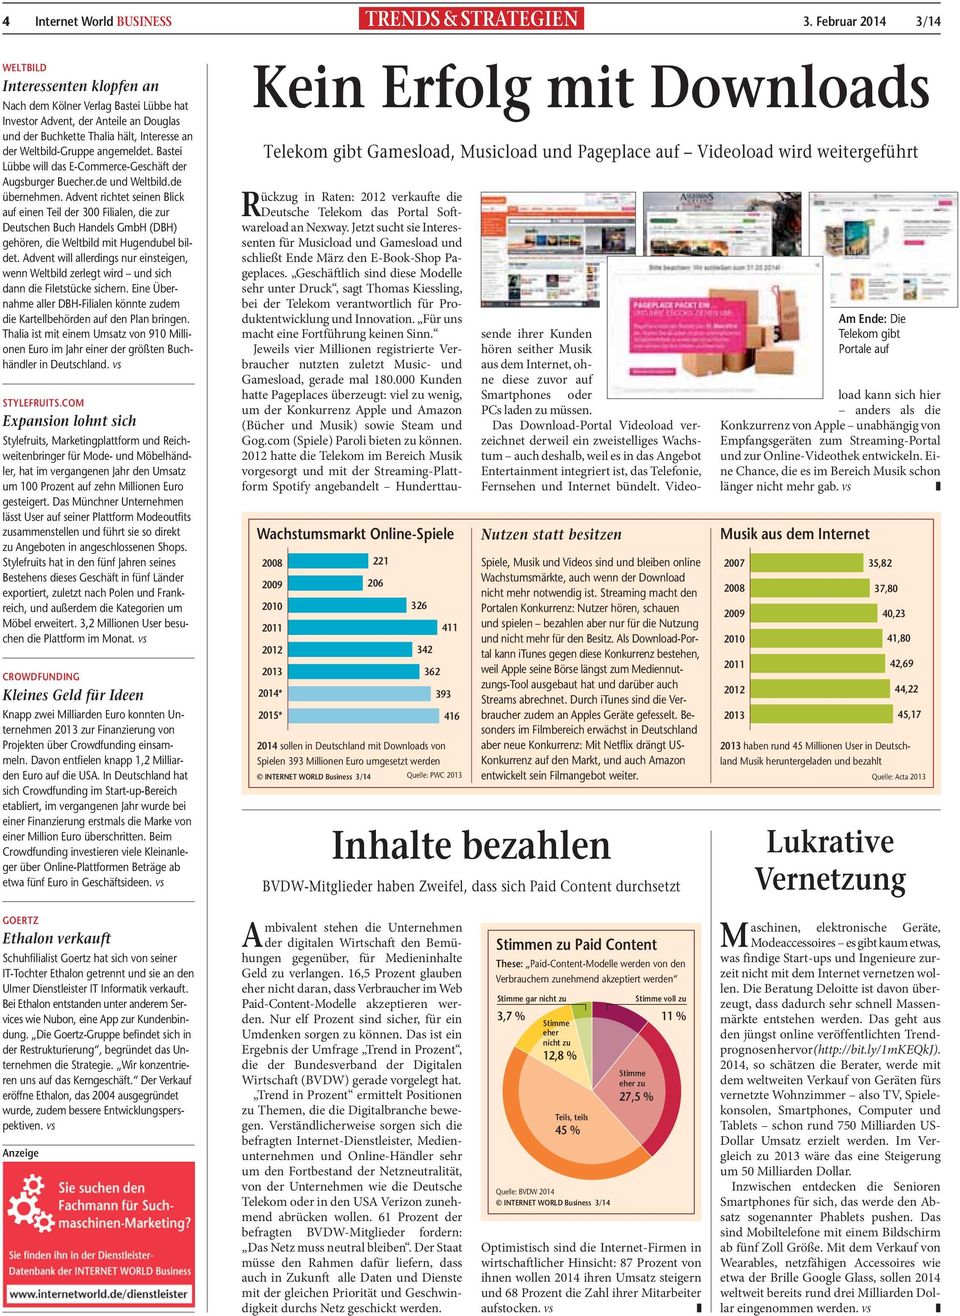 angemeldet. Bastei Lübbe will das E-Commerce-Geschäft der Augsburger Buecher.de und Weltbild.de übernehmen.